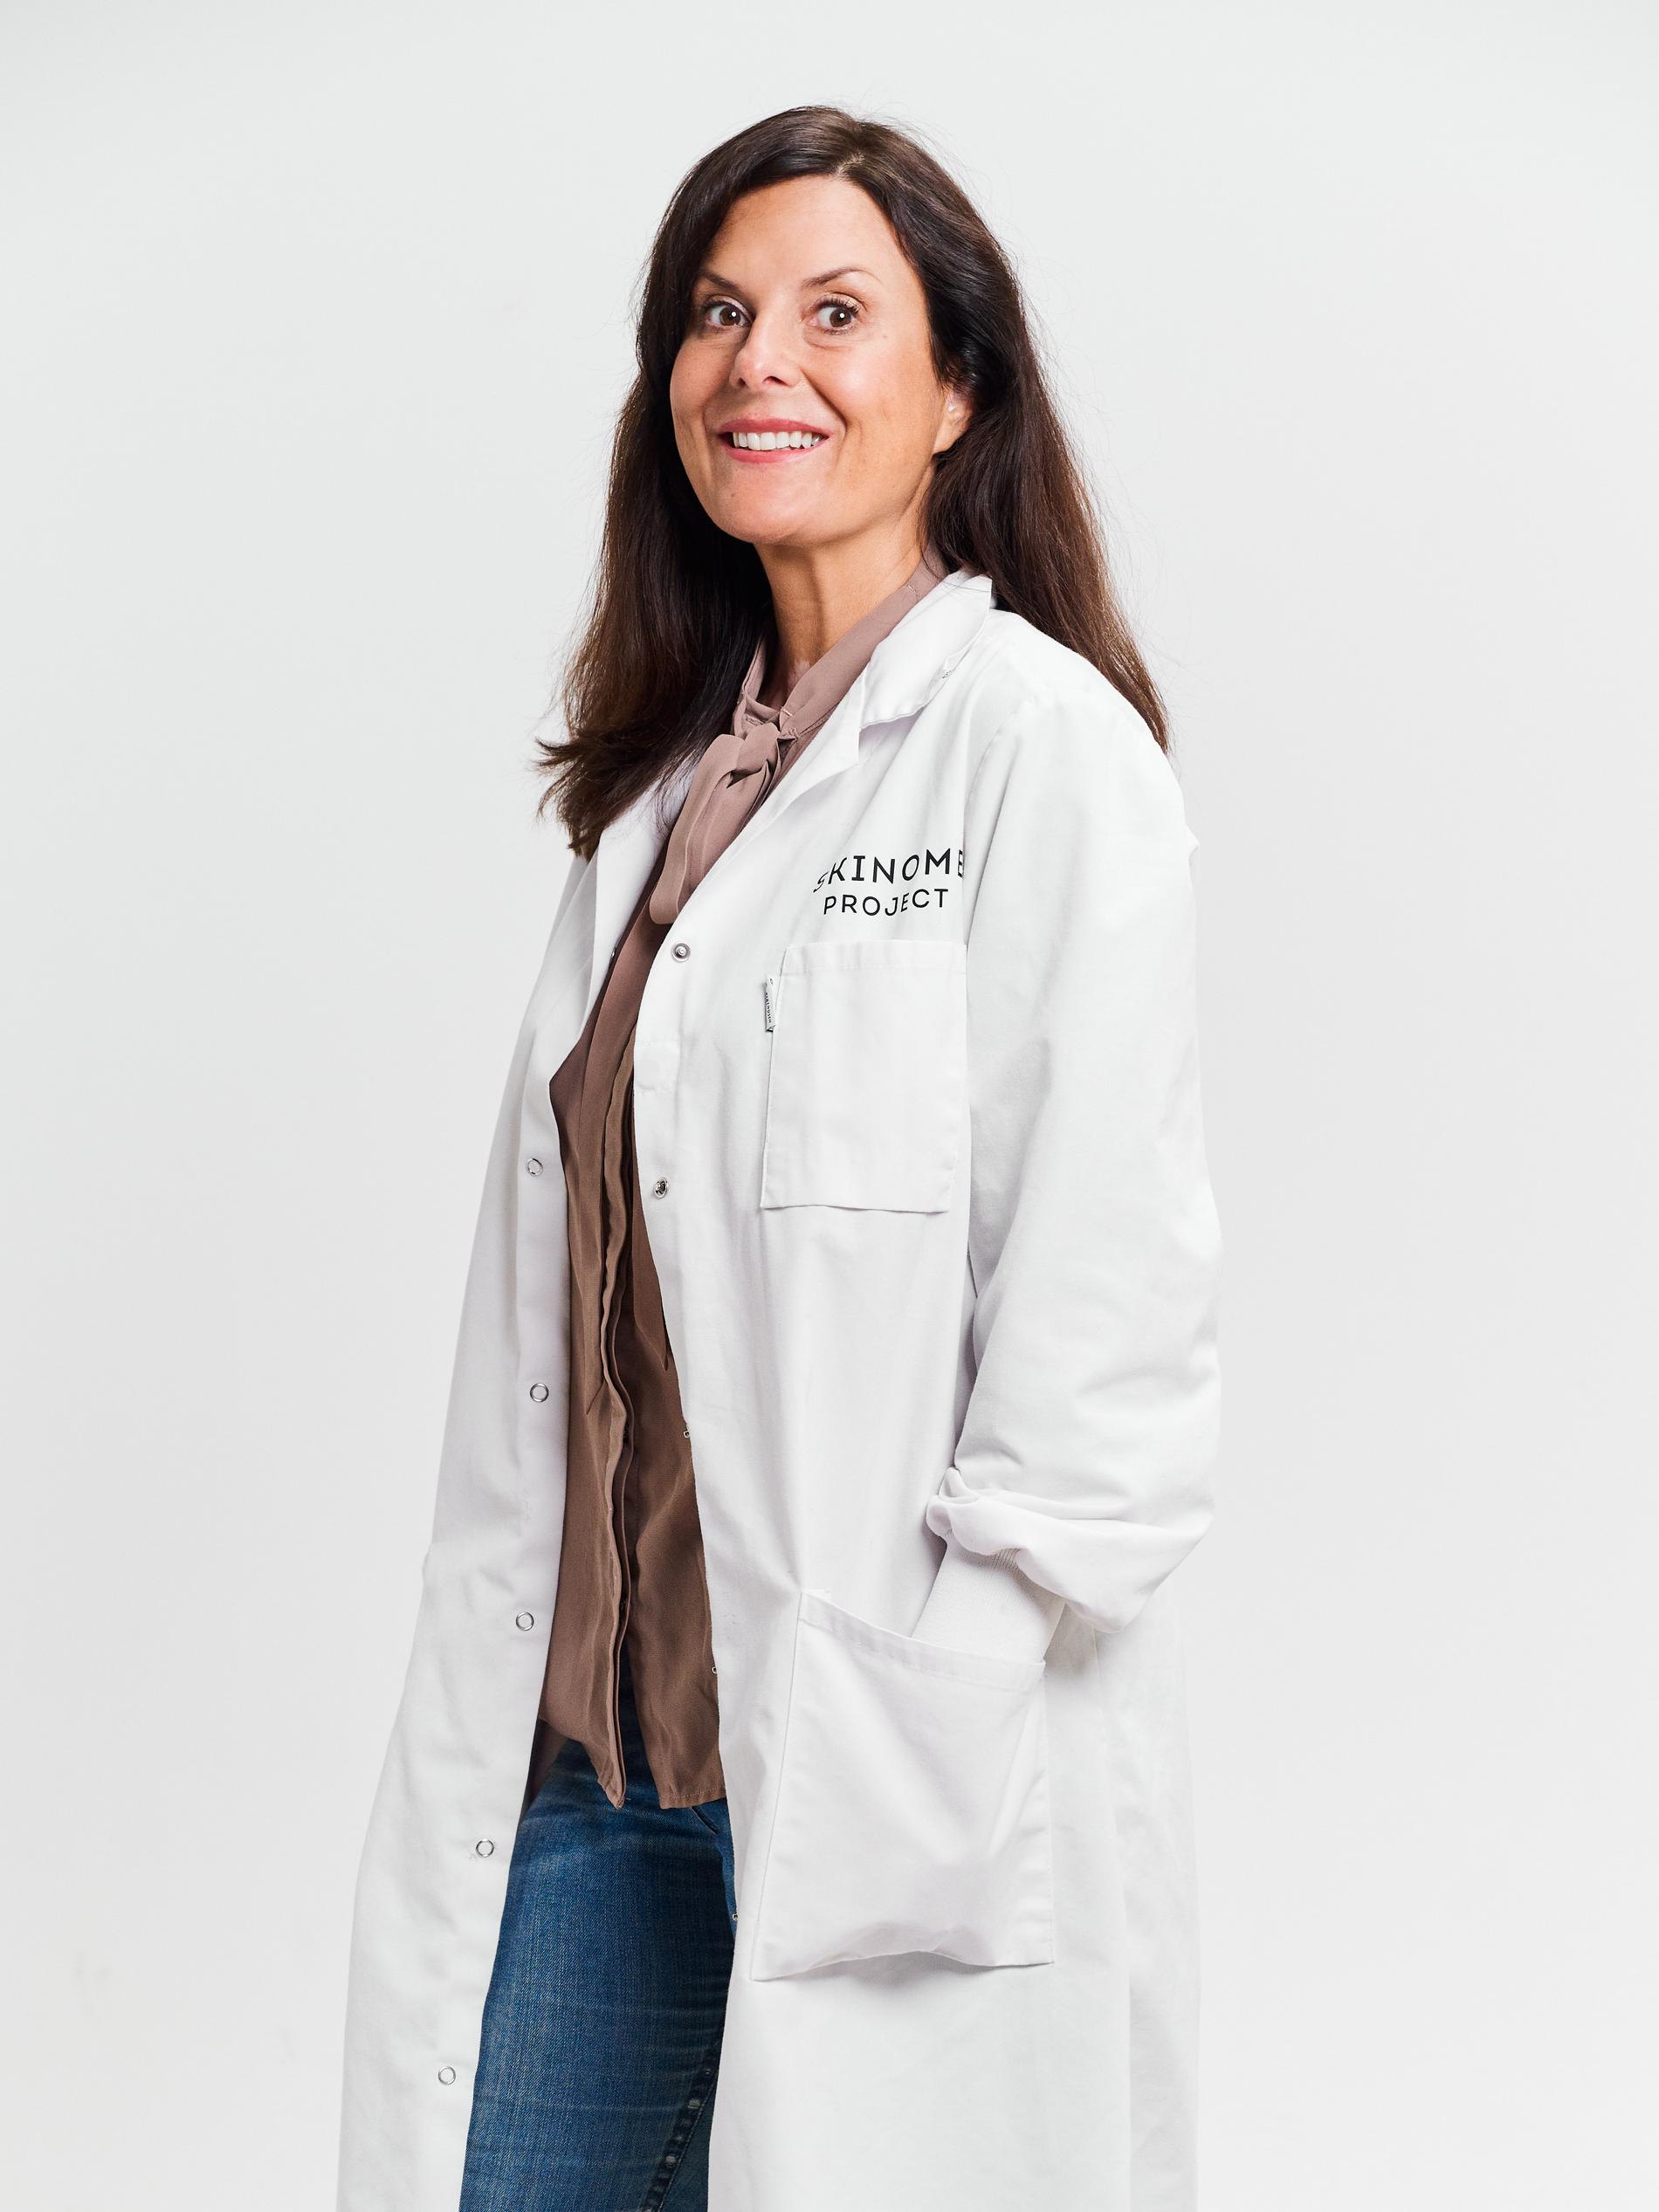 Johanna Gillbro är apotekare, doktor i experimentell dermatologi och grundaren bakom hudvårdsmärket Skinome. Hon har även skrivit boken Hudbibeln/The Scandinavian Skincare Bible som numera är översatt till sju språk. 